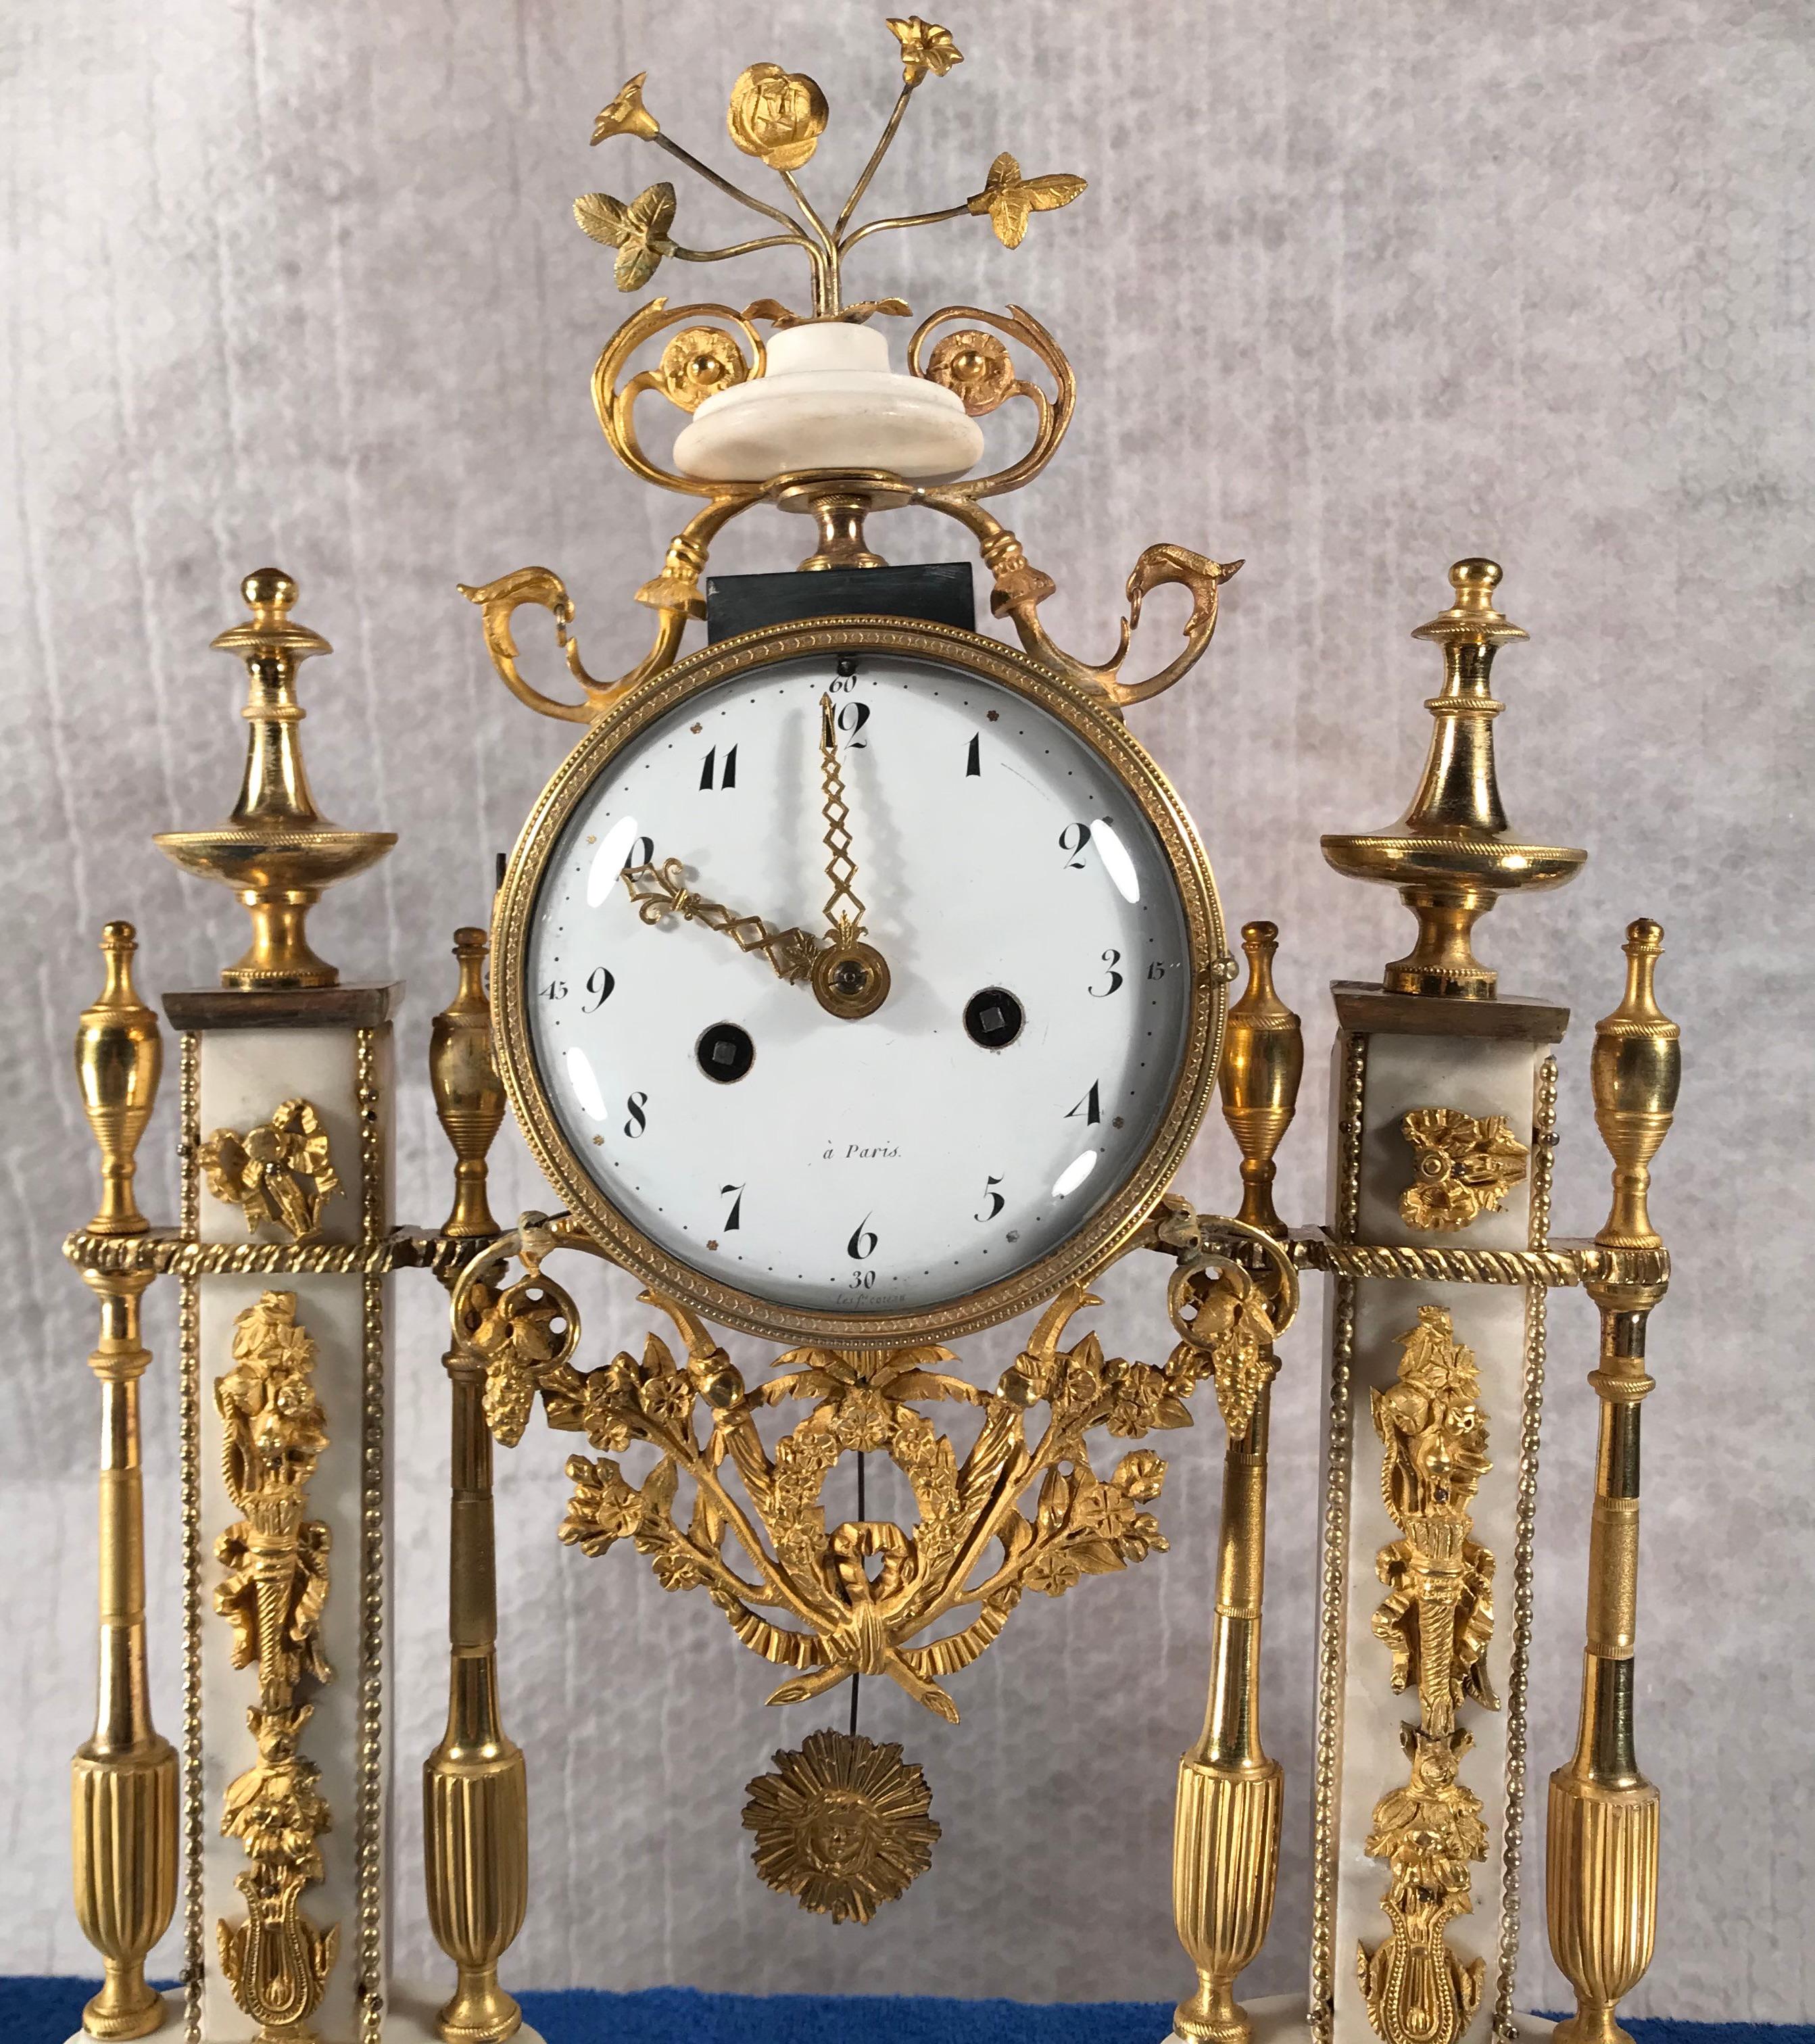 Louis-XVI-Simsuhr aus schwarzem und weißem Marmor mit Ormolu-Montierung, Paris, 1800.
Das weiße Emaille-Zifferblatt mit schwarzen arabischen Ziffern befindet sich in einem trommelförmigen Gehäuse. Das Gehäuse wird von vergoldeten Bronzepilastern